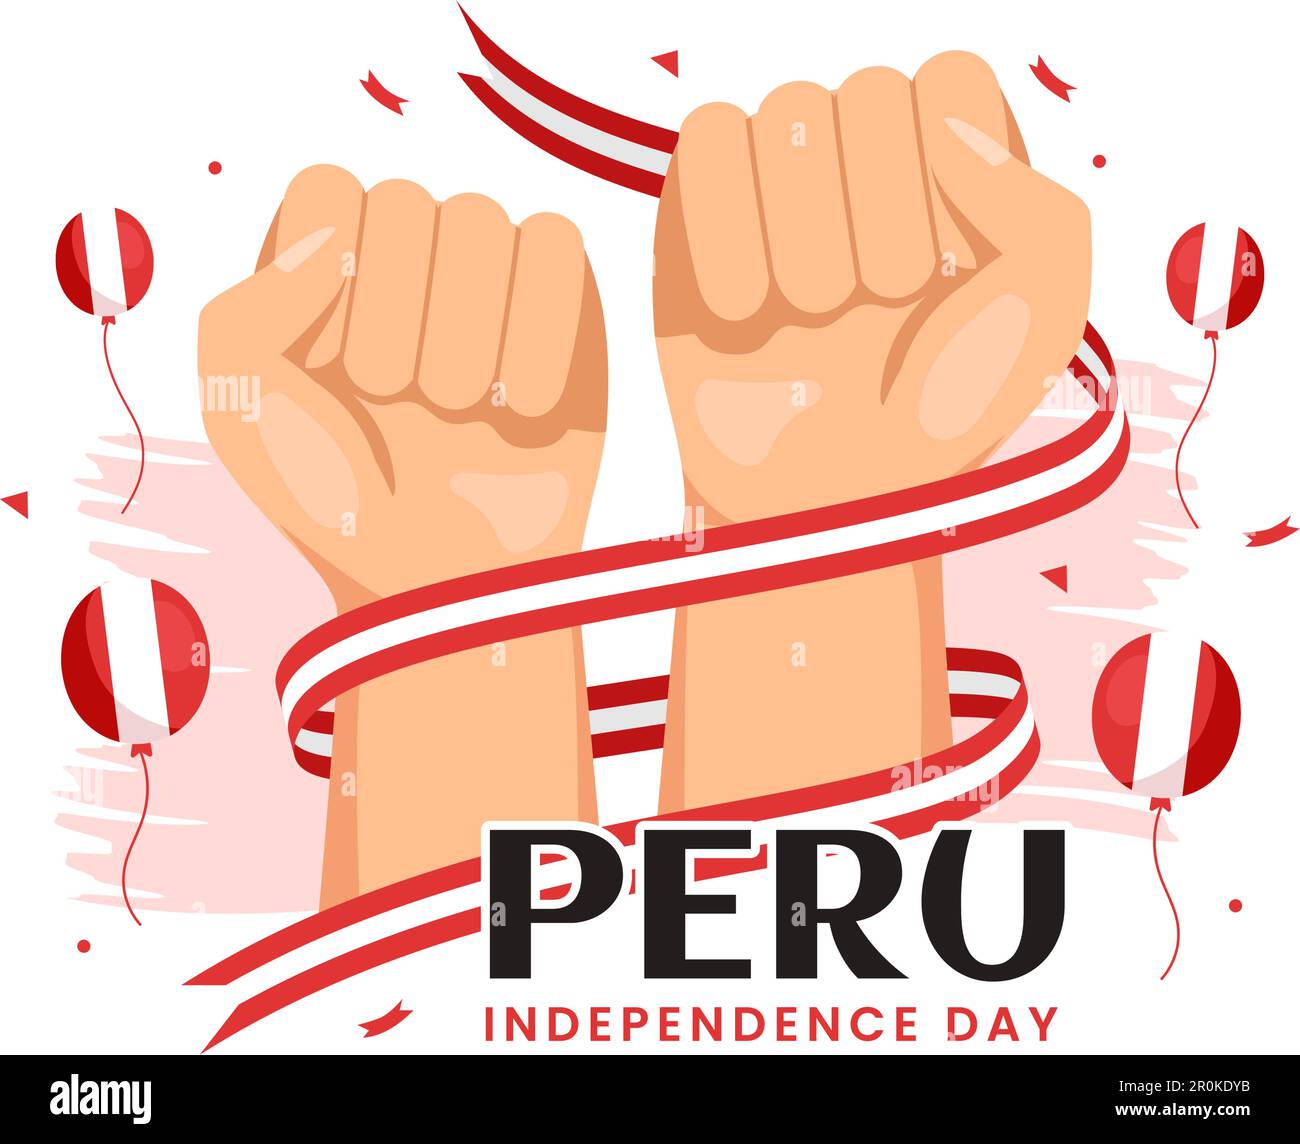 Peru Unabhängigkeitstag Vektorabbildung am 28. juli mit Waving Flag in handgezeichneten Landing-Page-Hintergrundvorlagen für National Holiday Flat Cartoon Stock Vektor